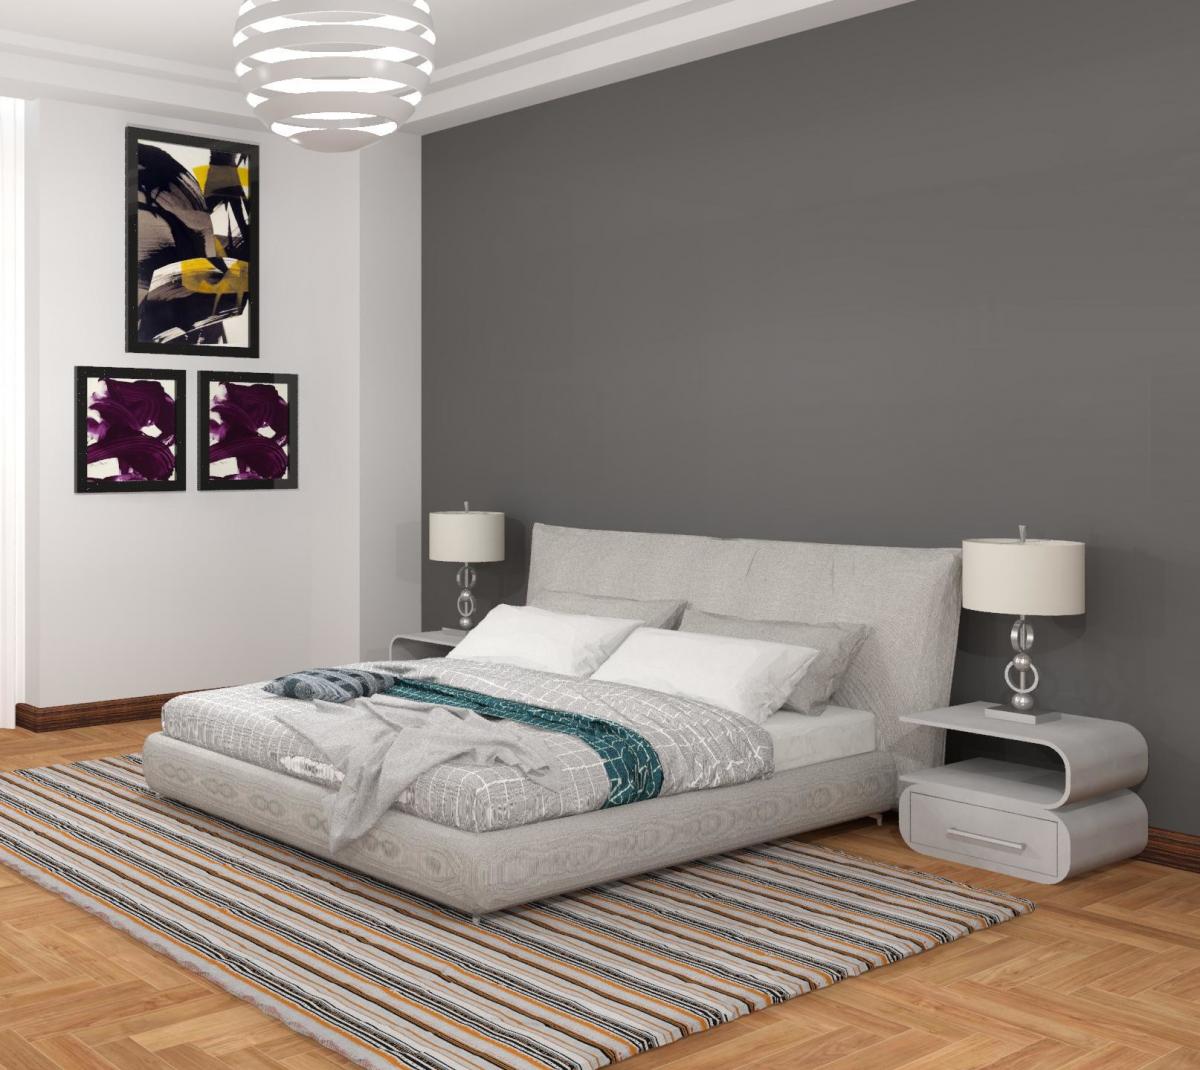 Simple Bedroom Render in Revit 2019